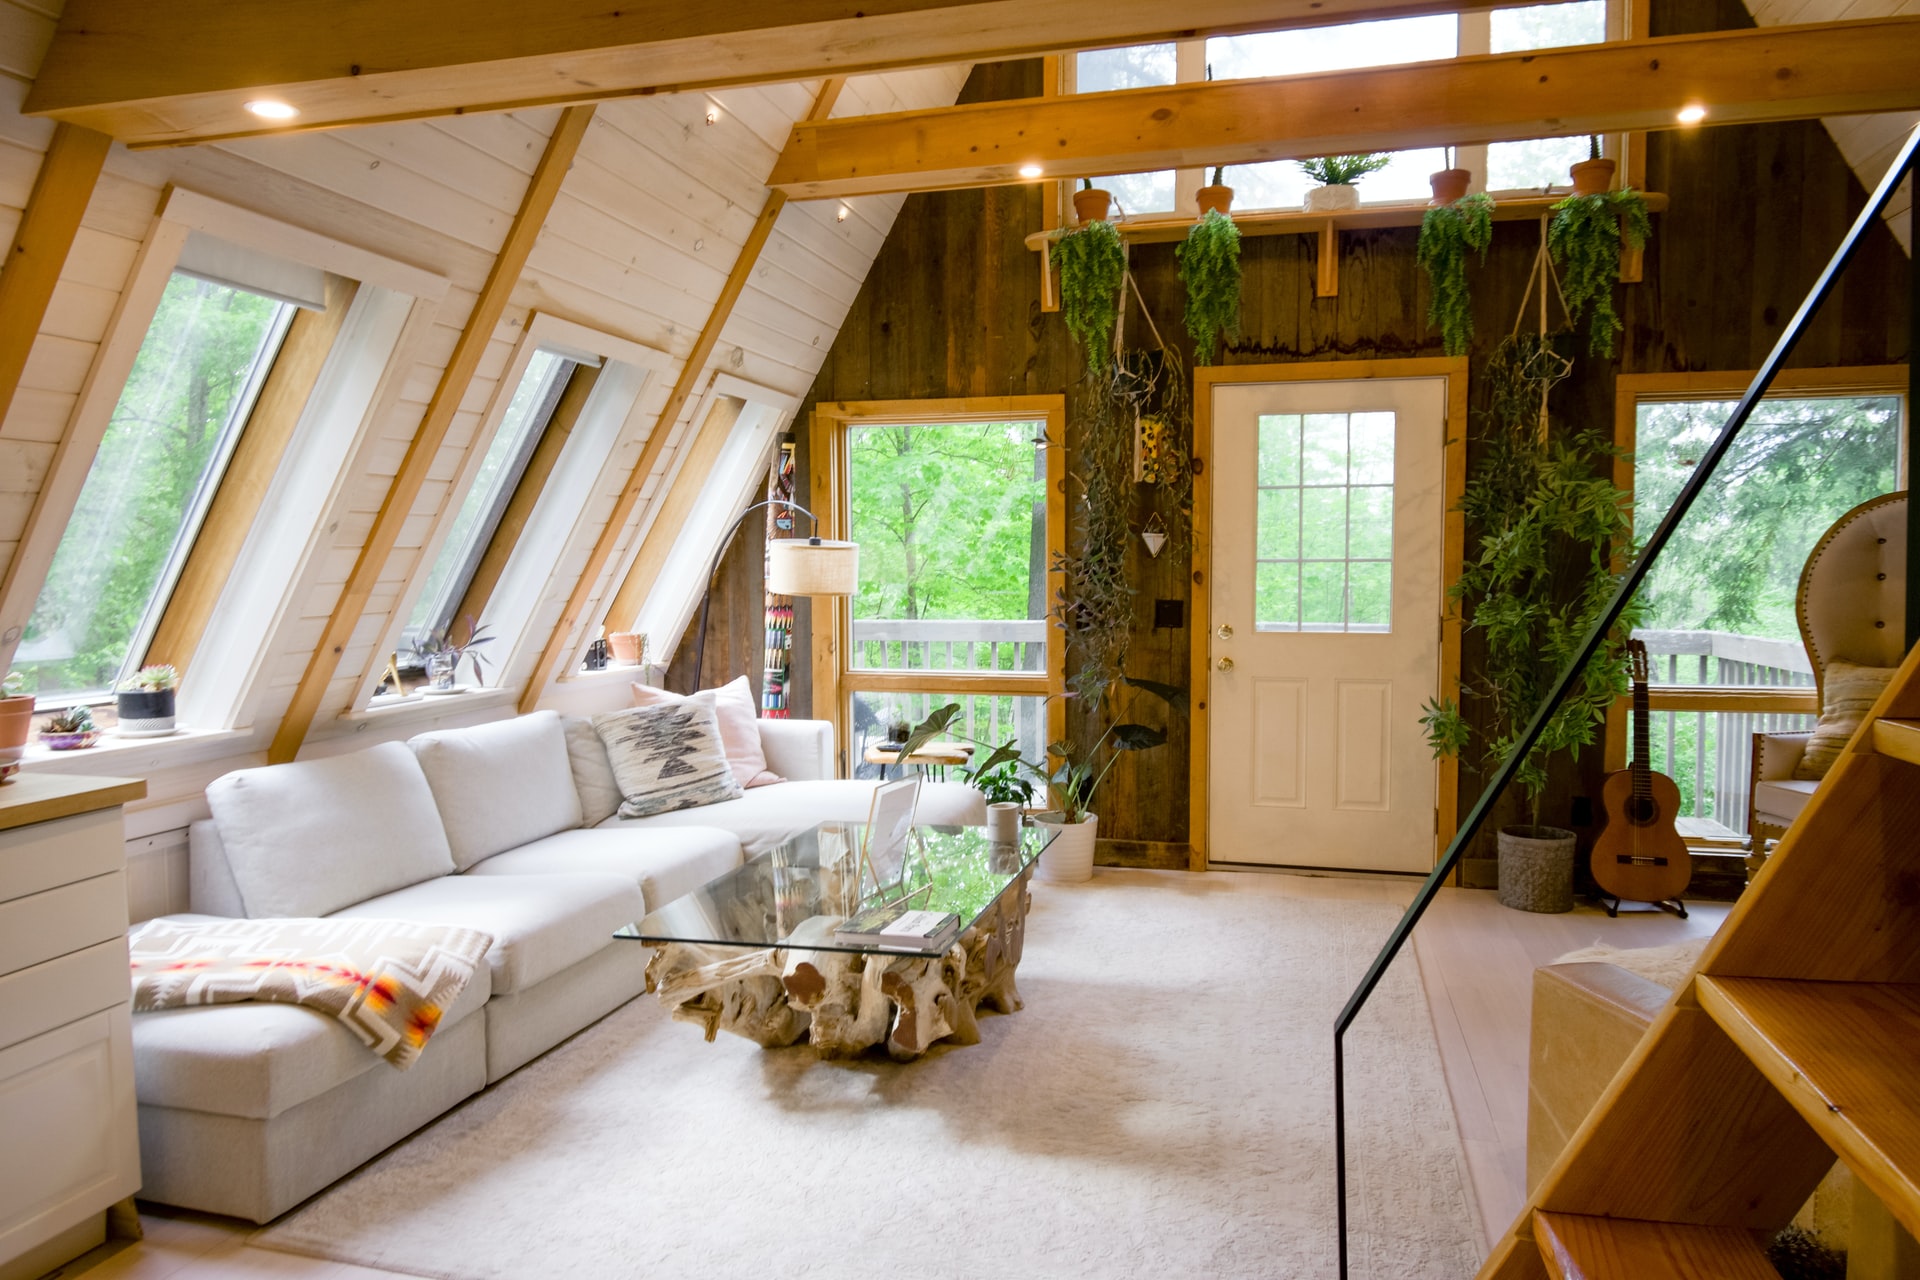 Znate li da postoji Ecobnb, platforma na kojoj možete pronaći autentične eco-friendly kuće za odmor?